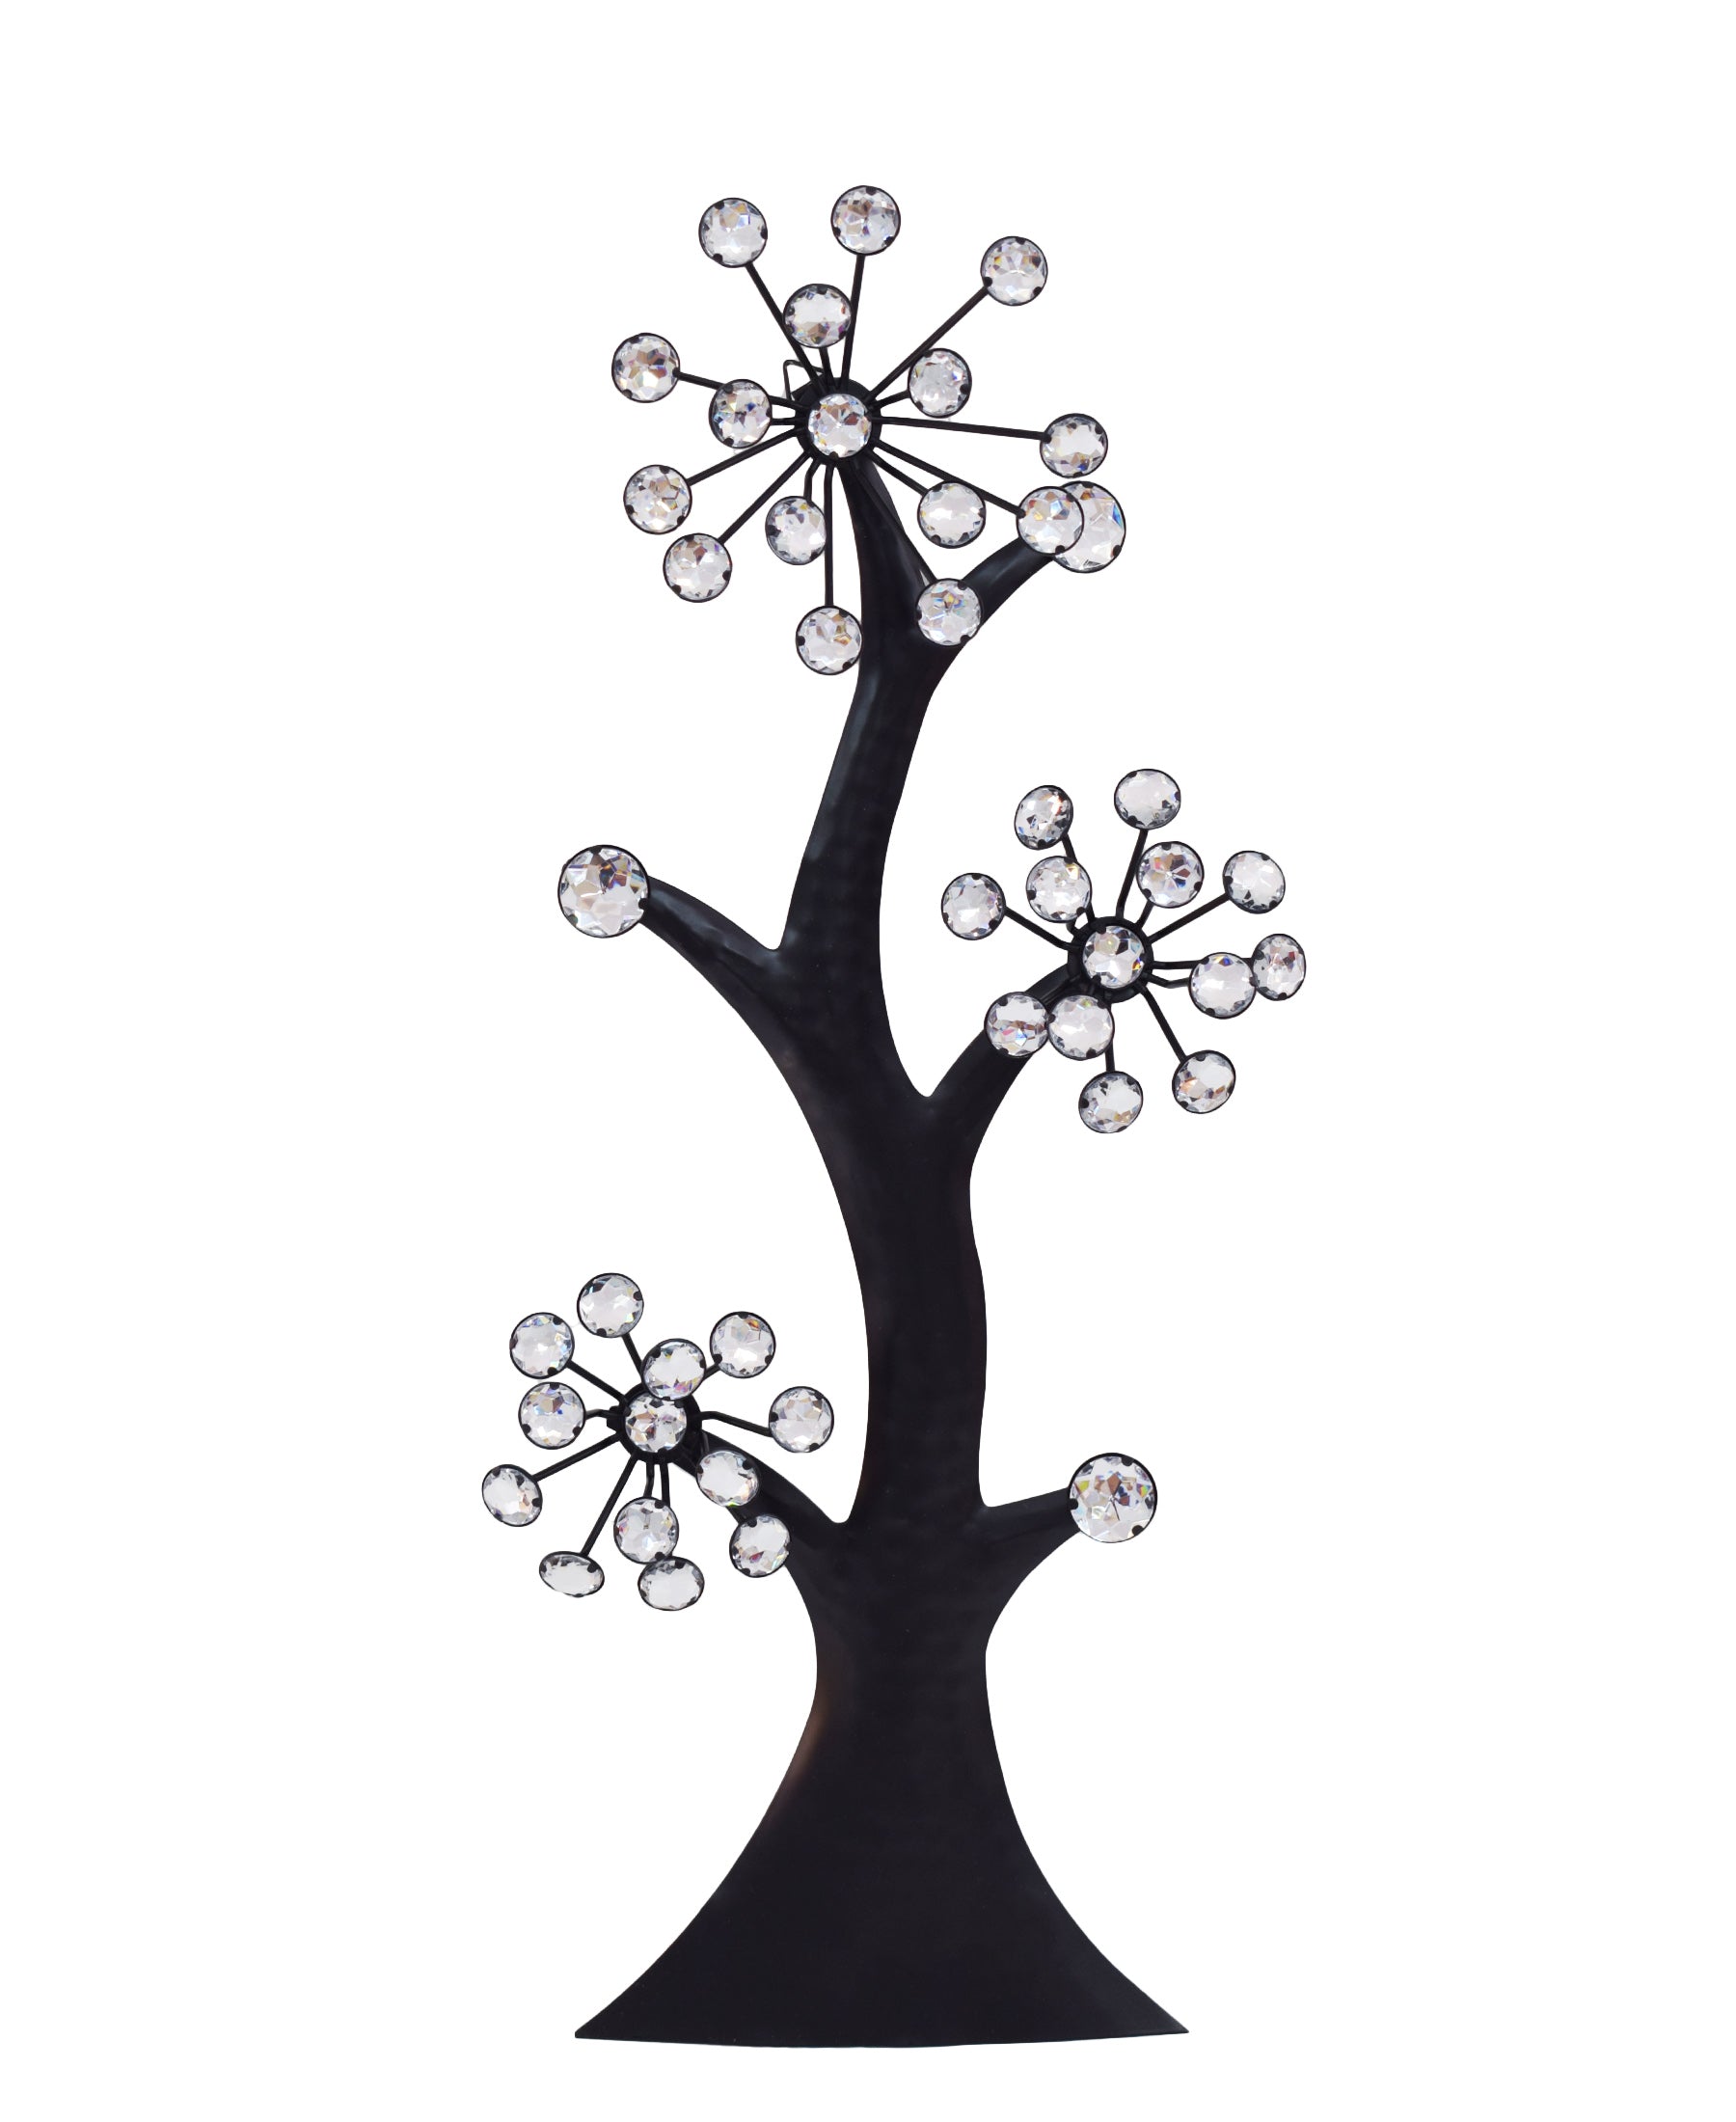 Black Widow Tree Ornament - Black